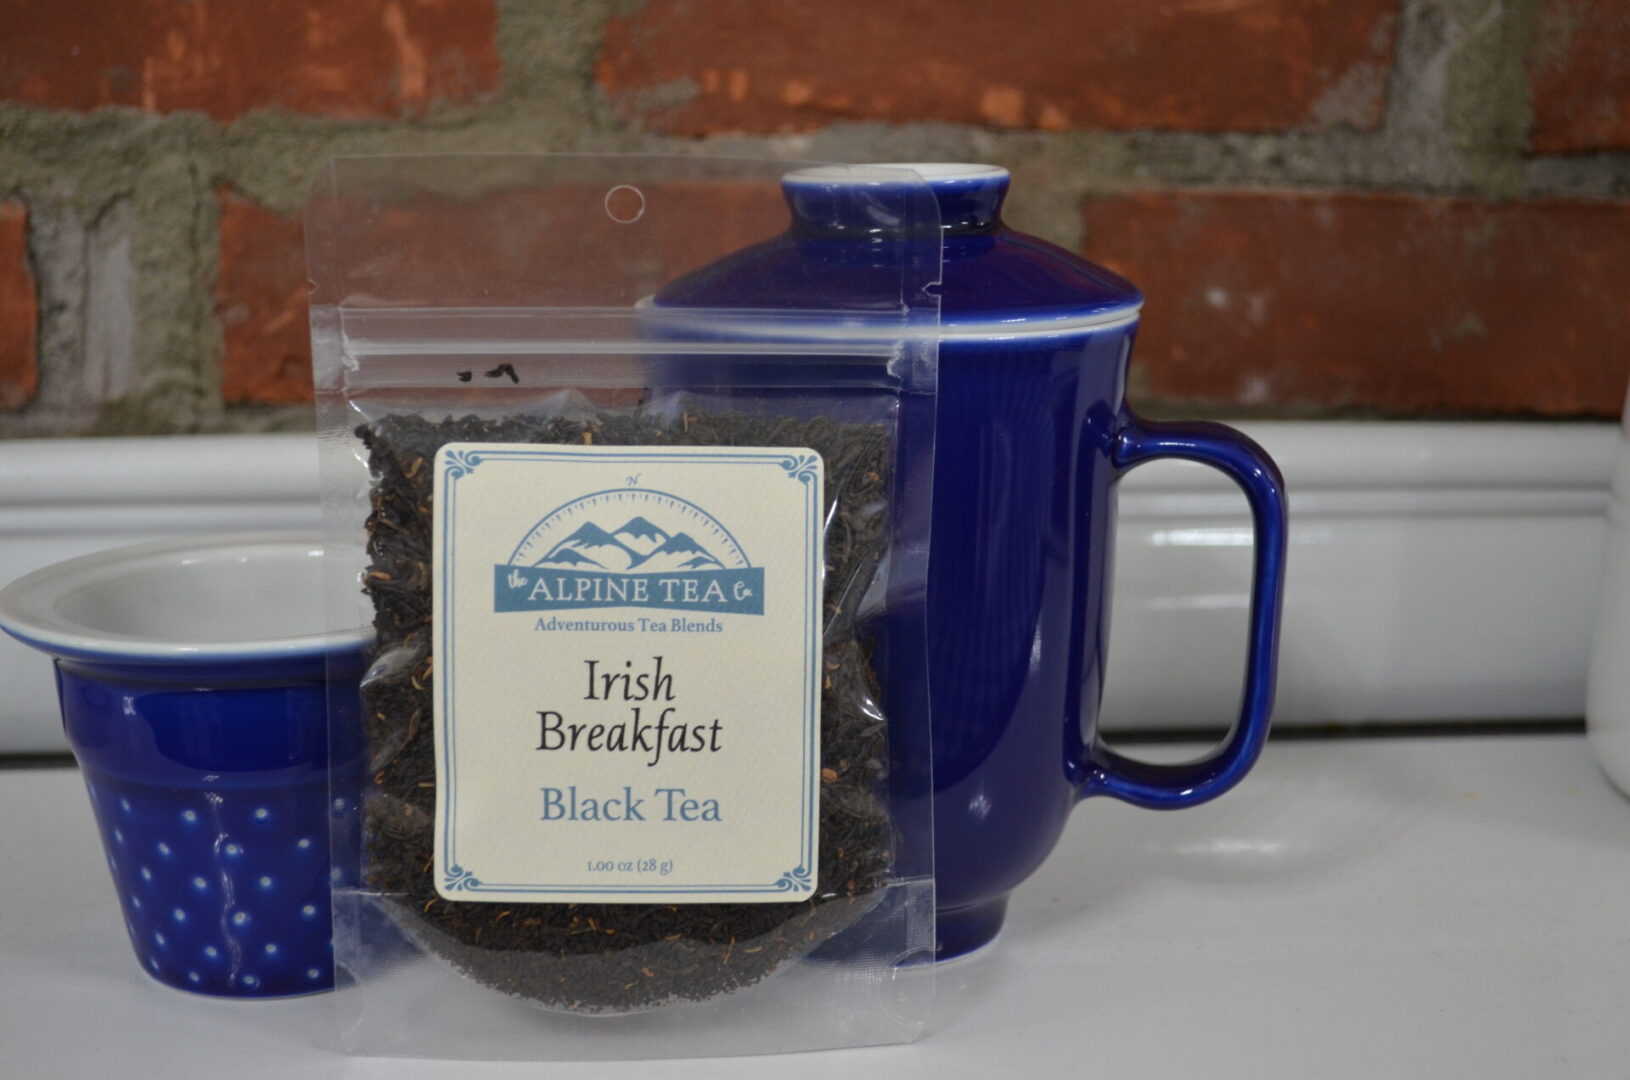 A bag of tea and a mug on the table.